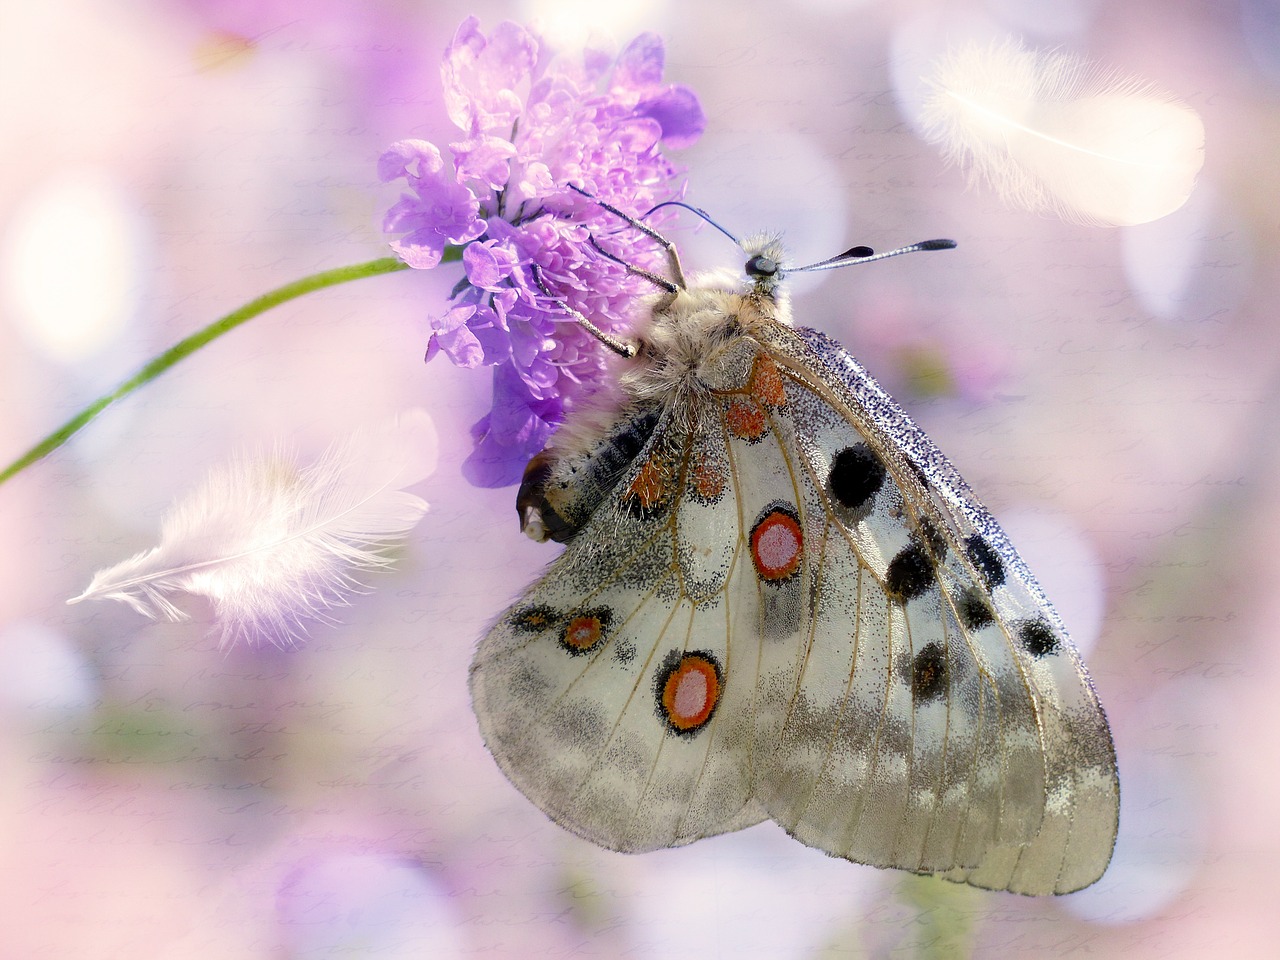 apollofalter butterfly flower free photo